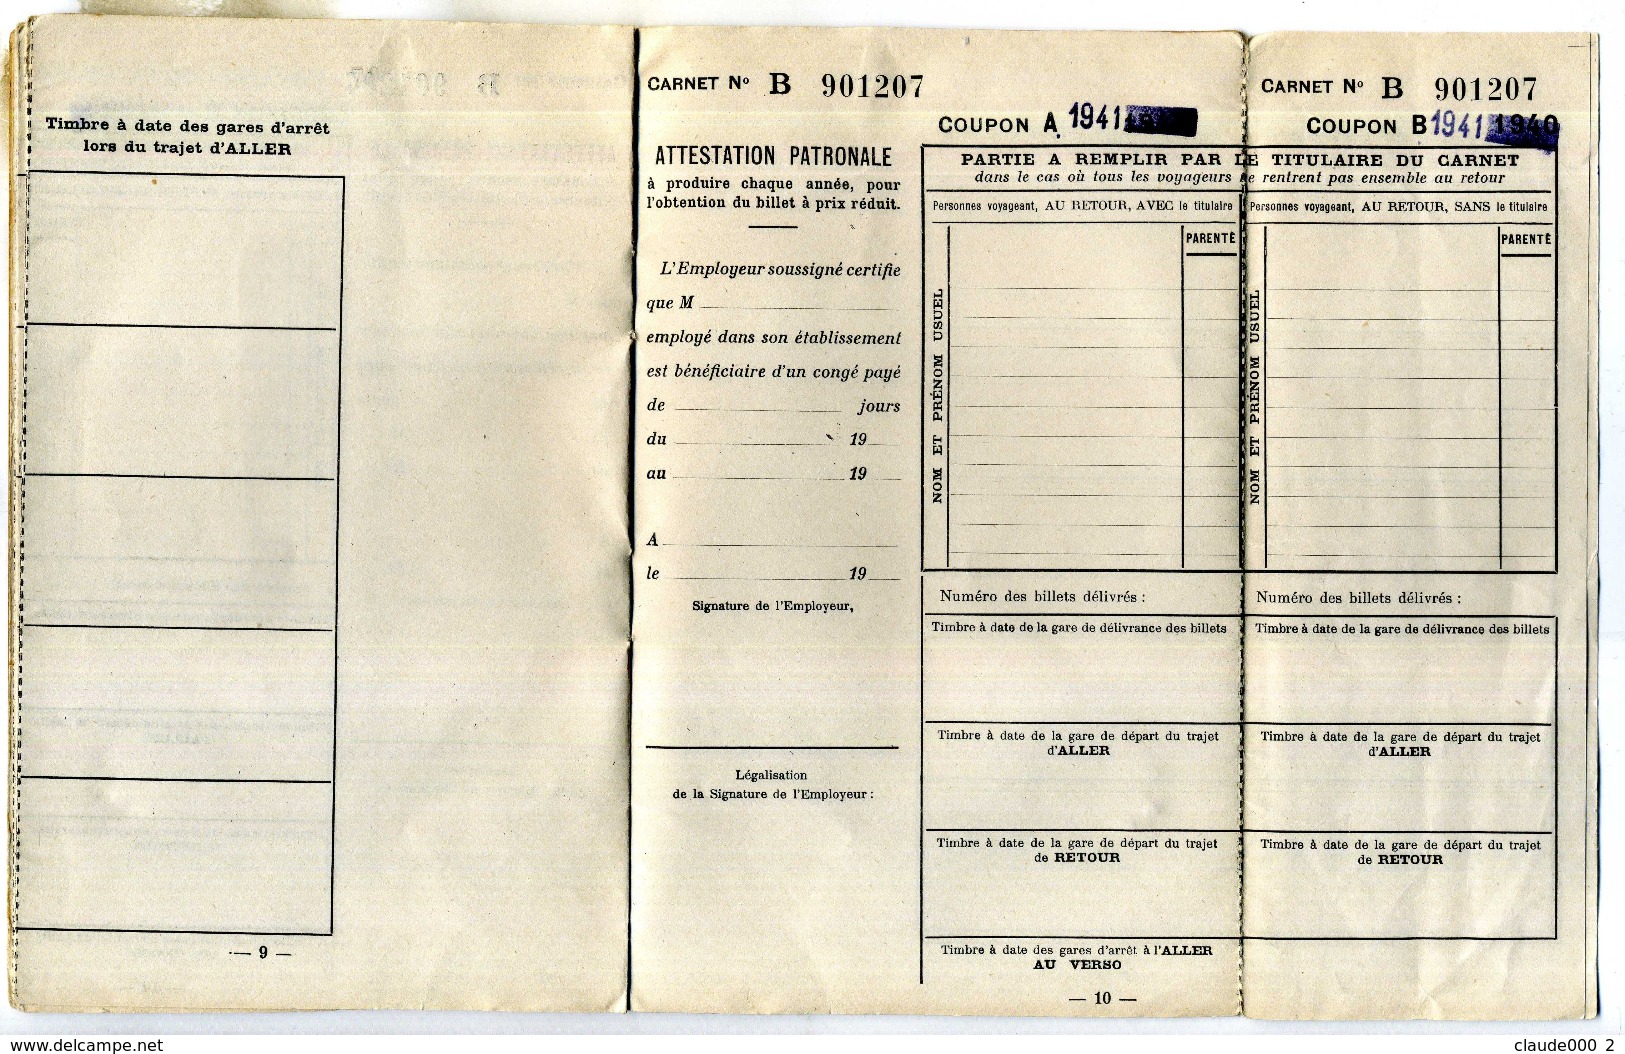 CARNET BILLETS POPULAIRES DE CONGE ANNUEL de Mr BERNARD Octave-Joseph né le 22/11/1911